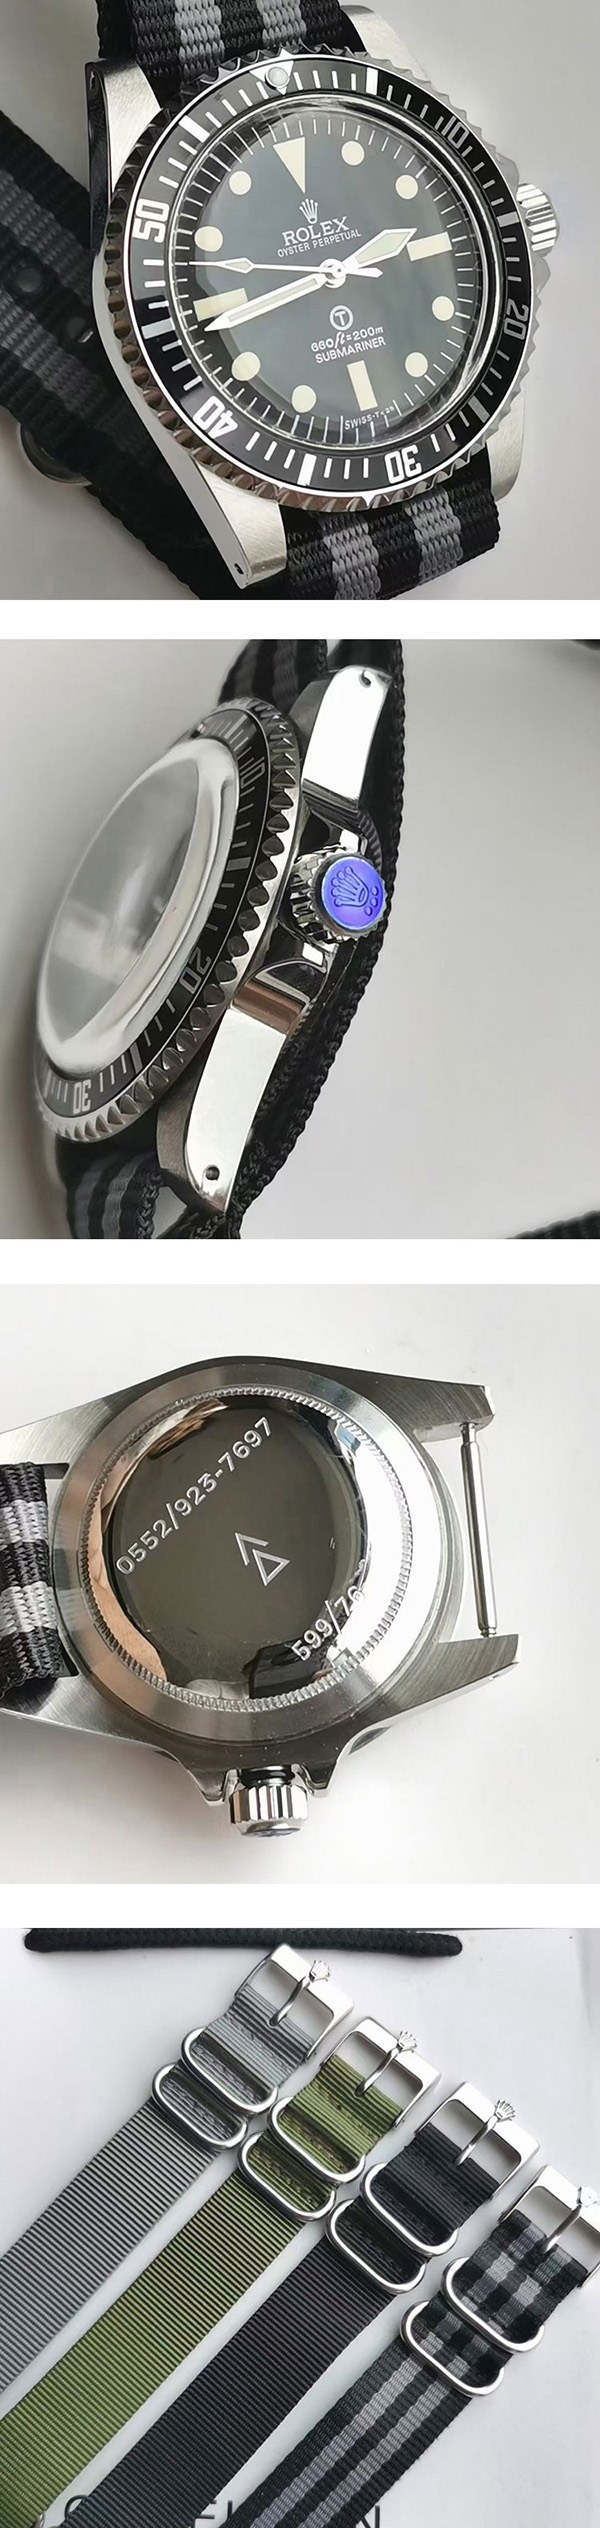 【かっこいい 】サブマリーナー時計 Ref.5513 大人気 紳士用腕時計おすすめ